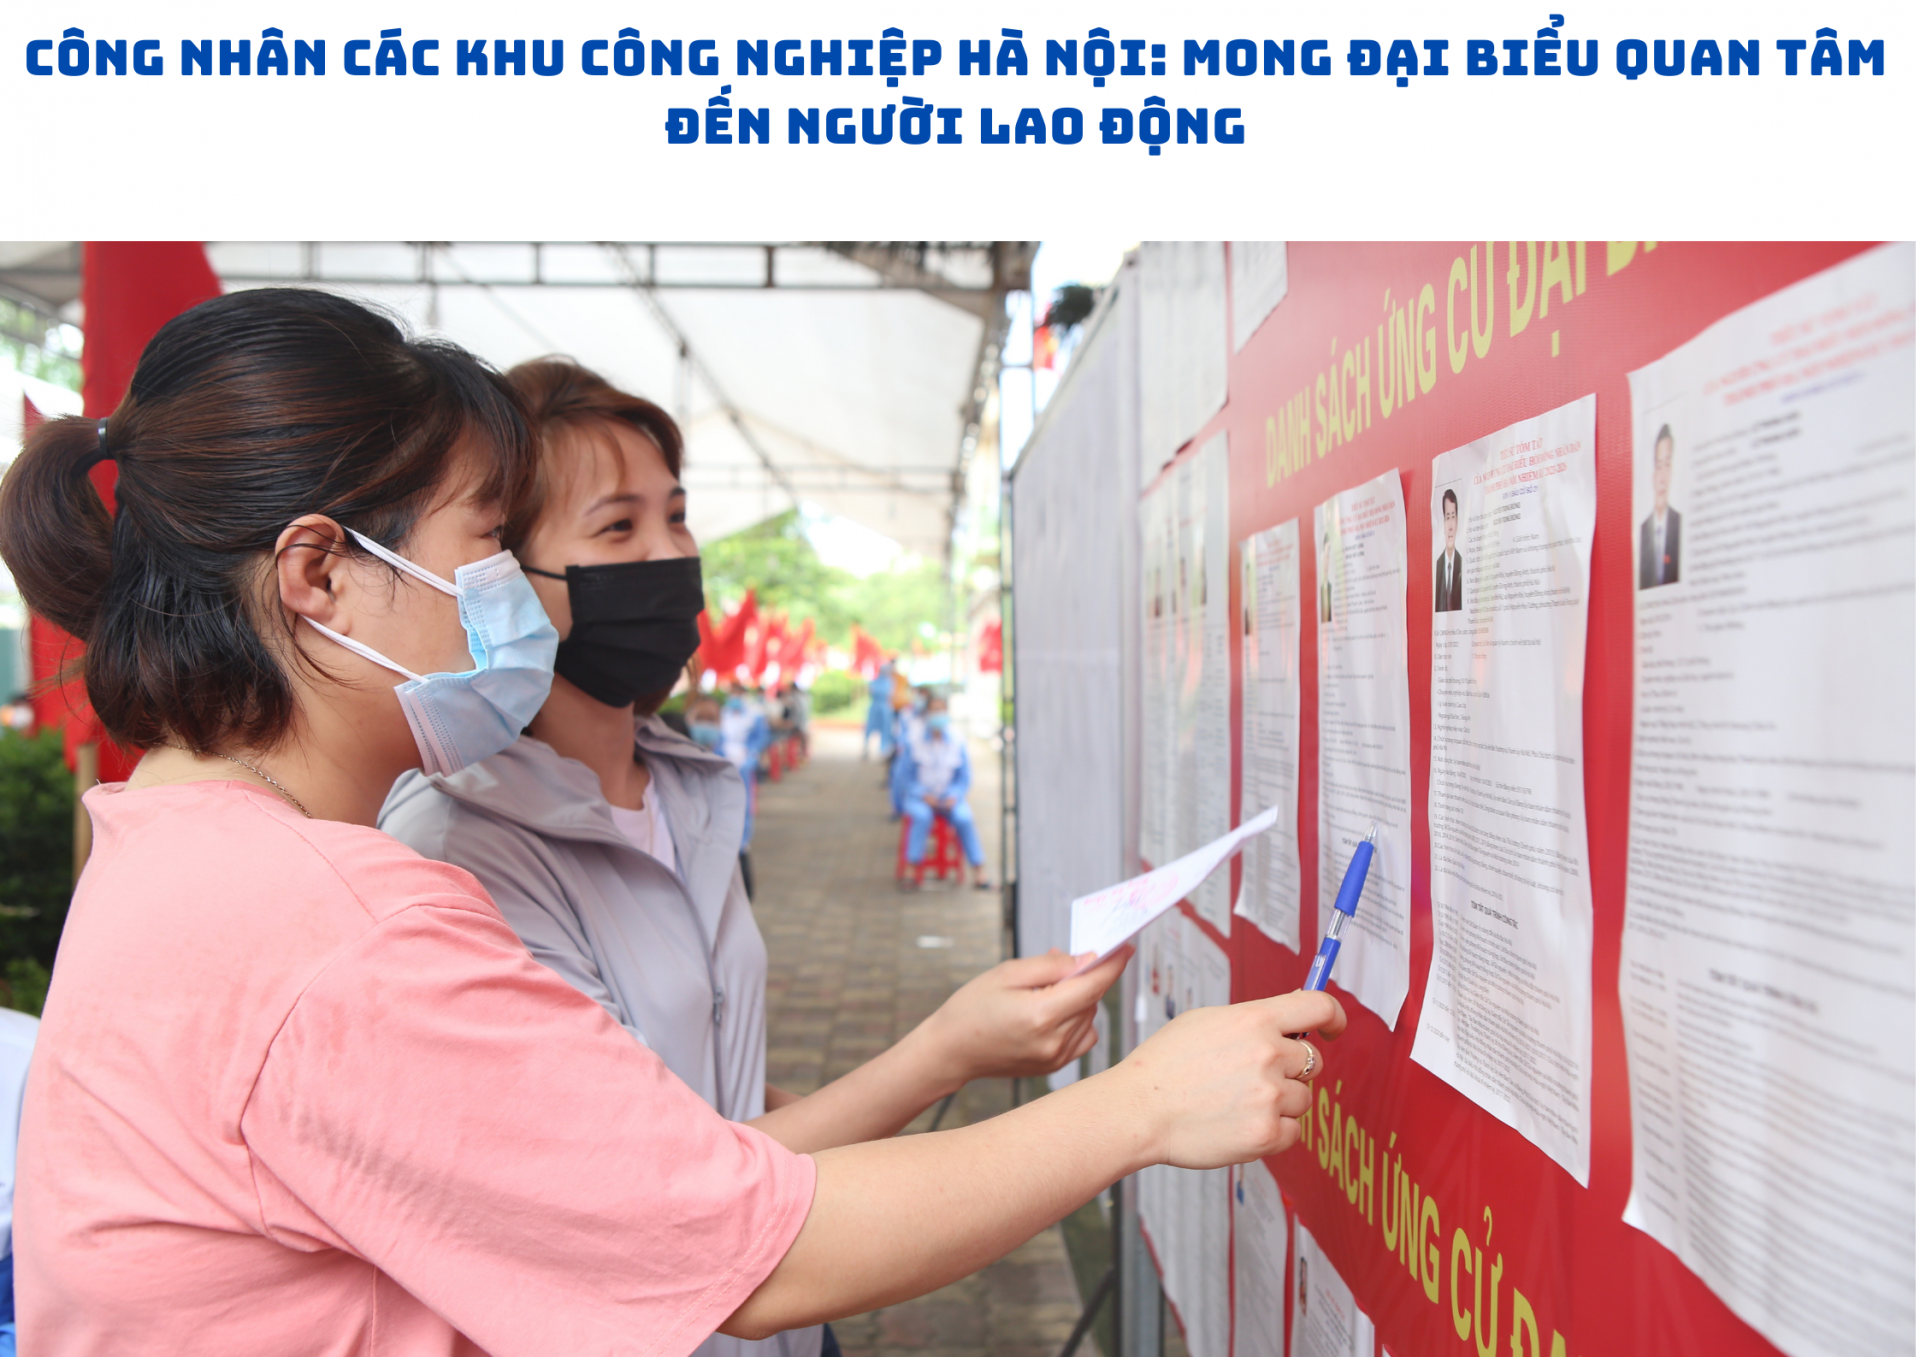 Công nhân Hà Nội: Mong đại biểu quan tâm đến người lao động